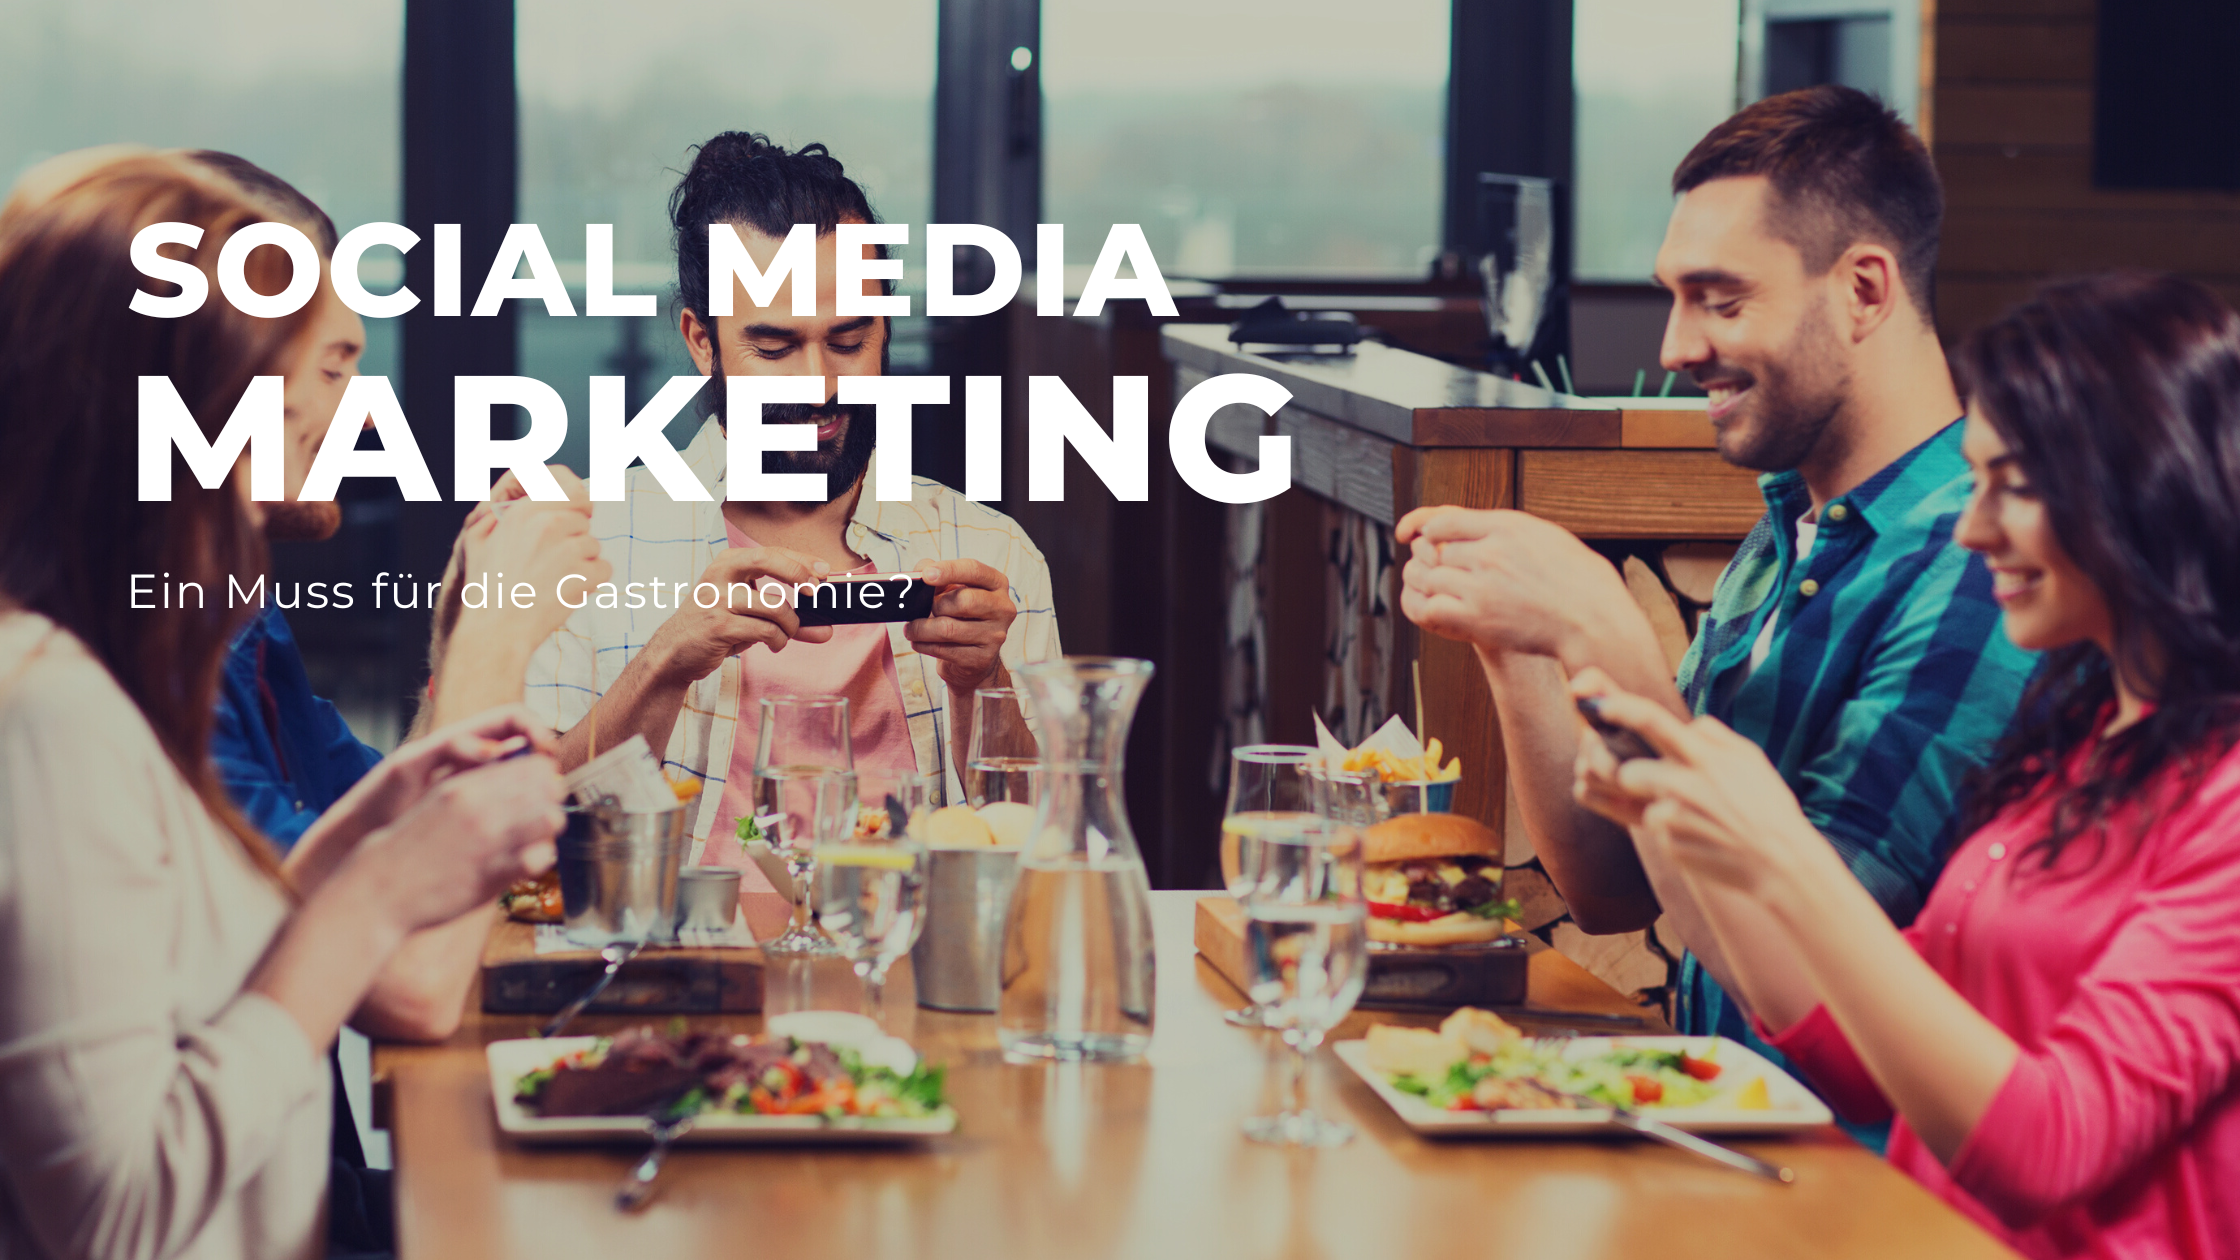 8 Tipps für Social Media Marketing in der Gastronomie